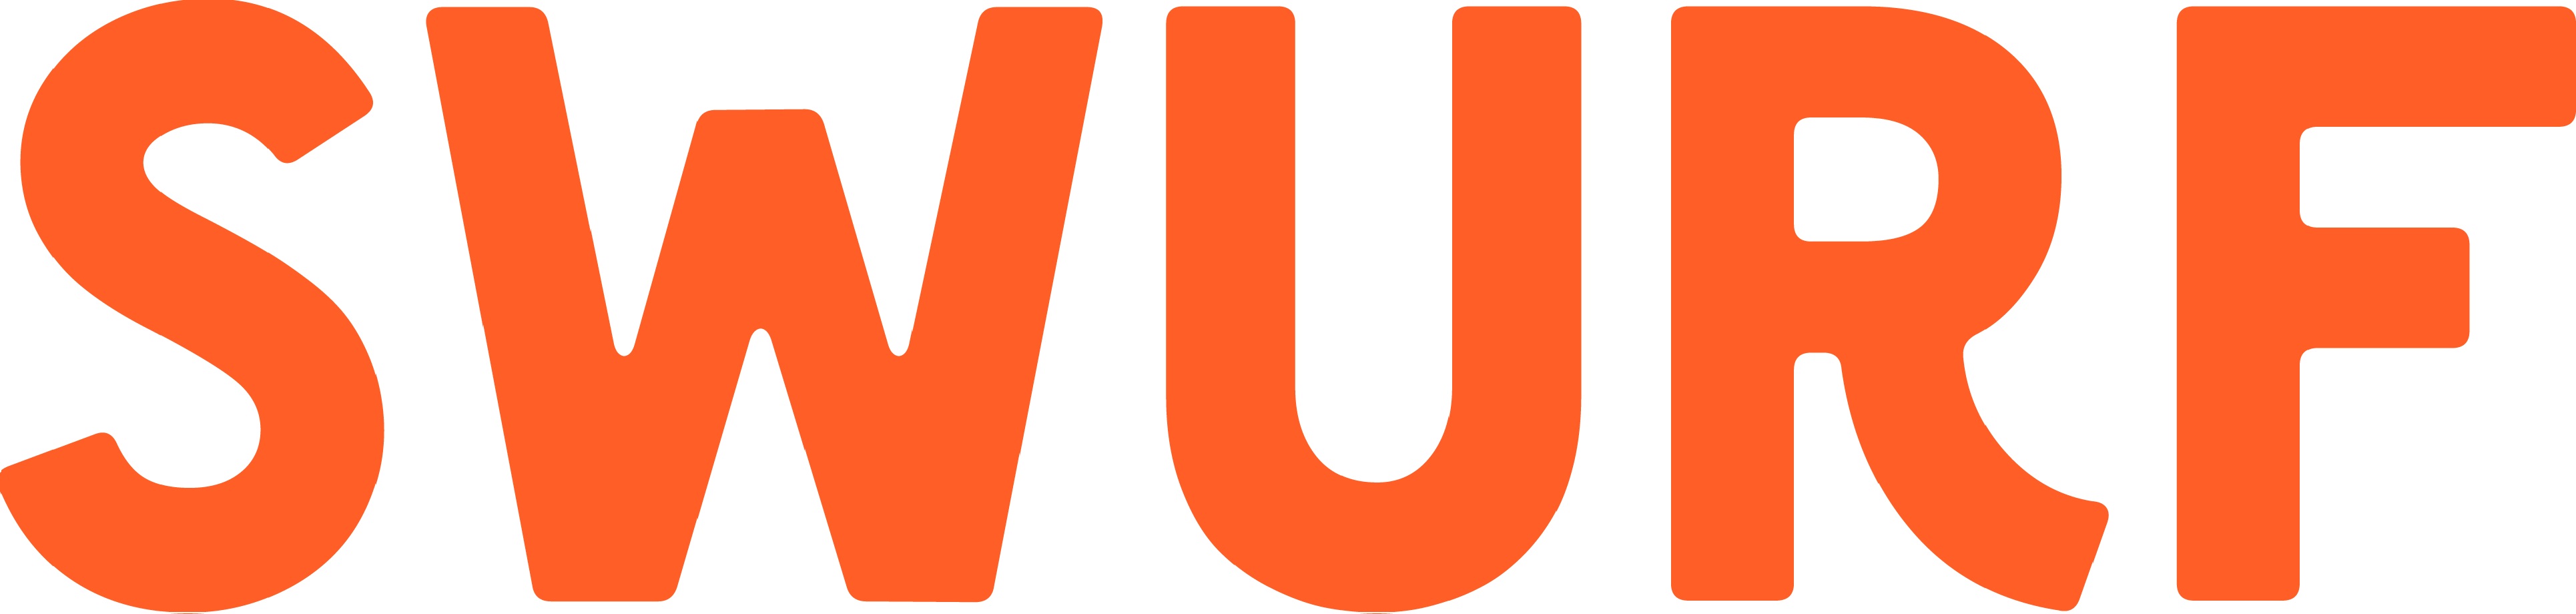 Swurf logo